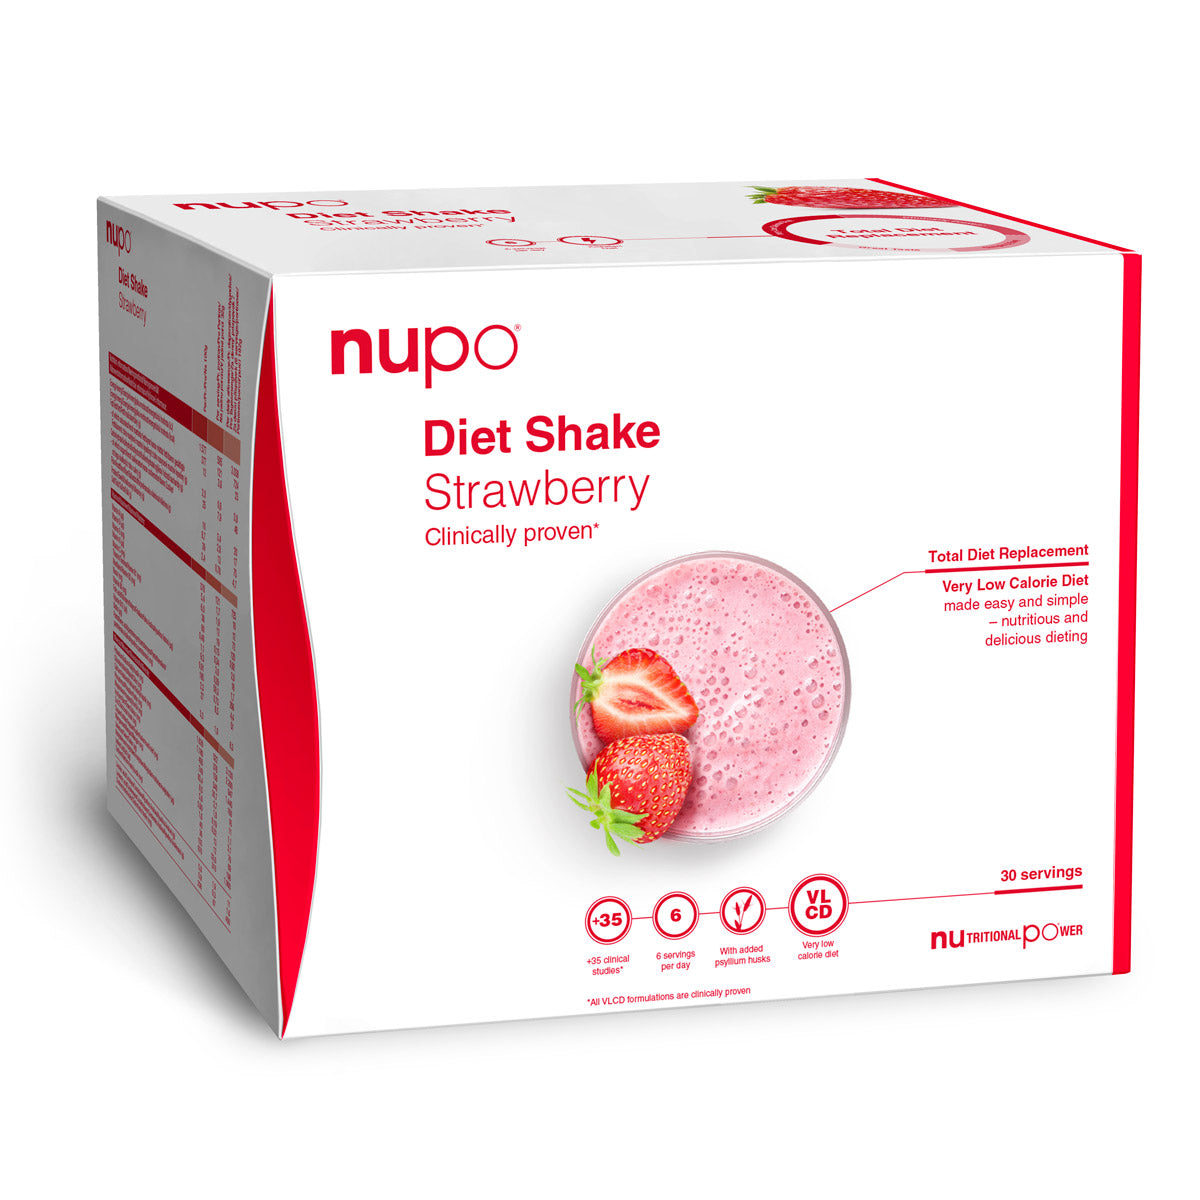 Brug Nupo Diet Shake Value Pack (960g) - Strawberry til en forbedret oplevelse